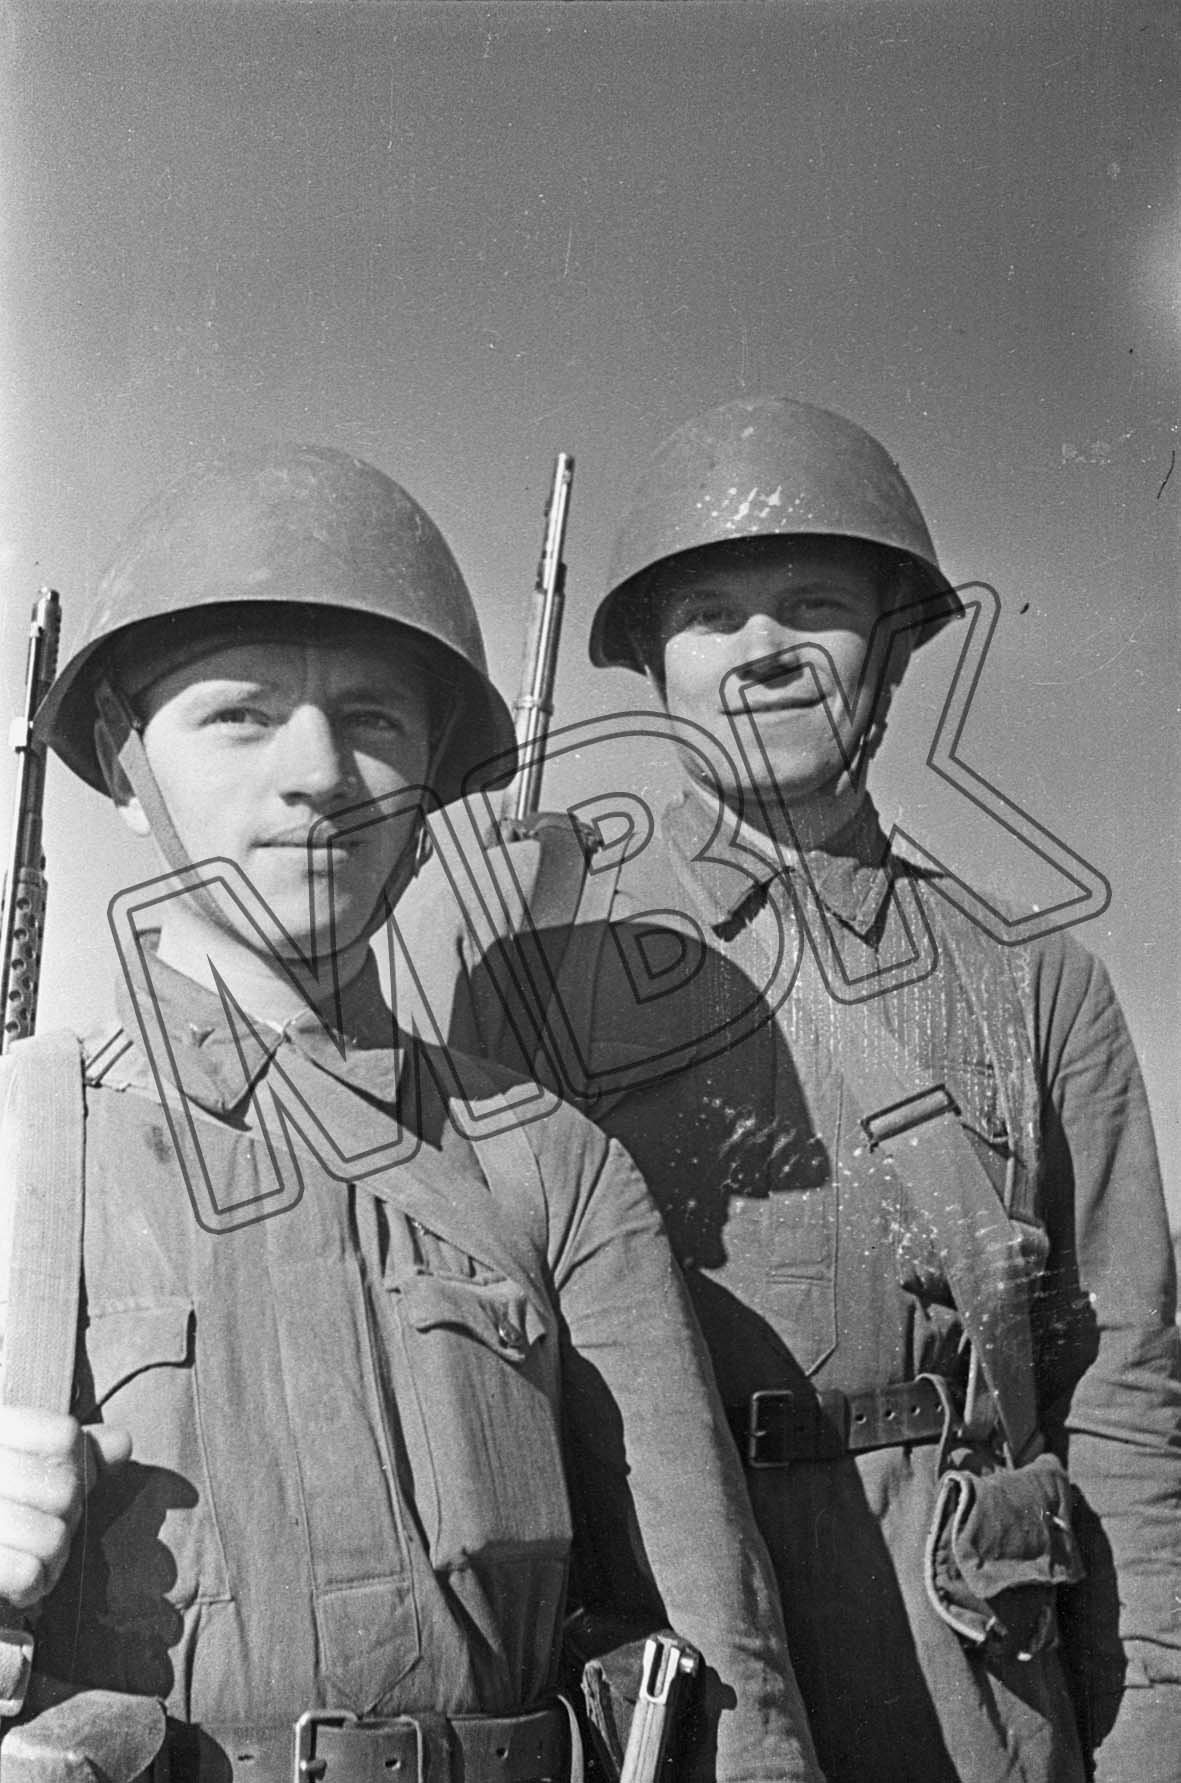 Fotografie: Ausgezeichnete sowjetische Infanteristen, 11. September 1941 (Museum Berlin-Karlshorst RR-P)